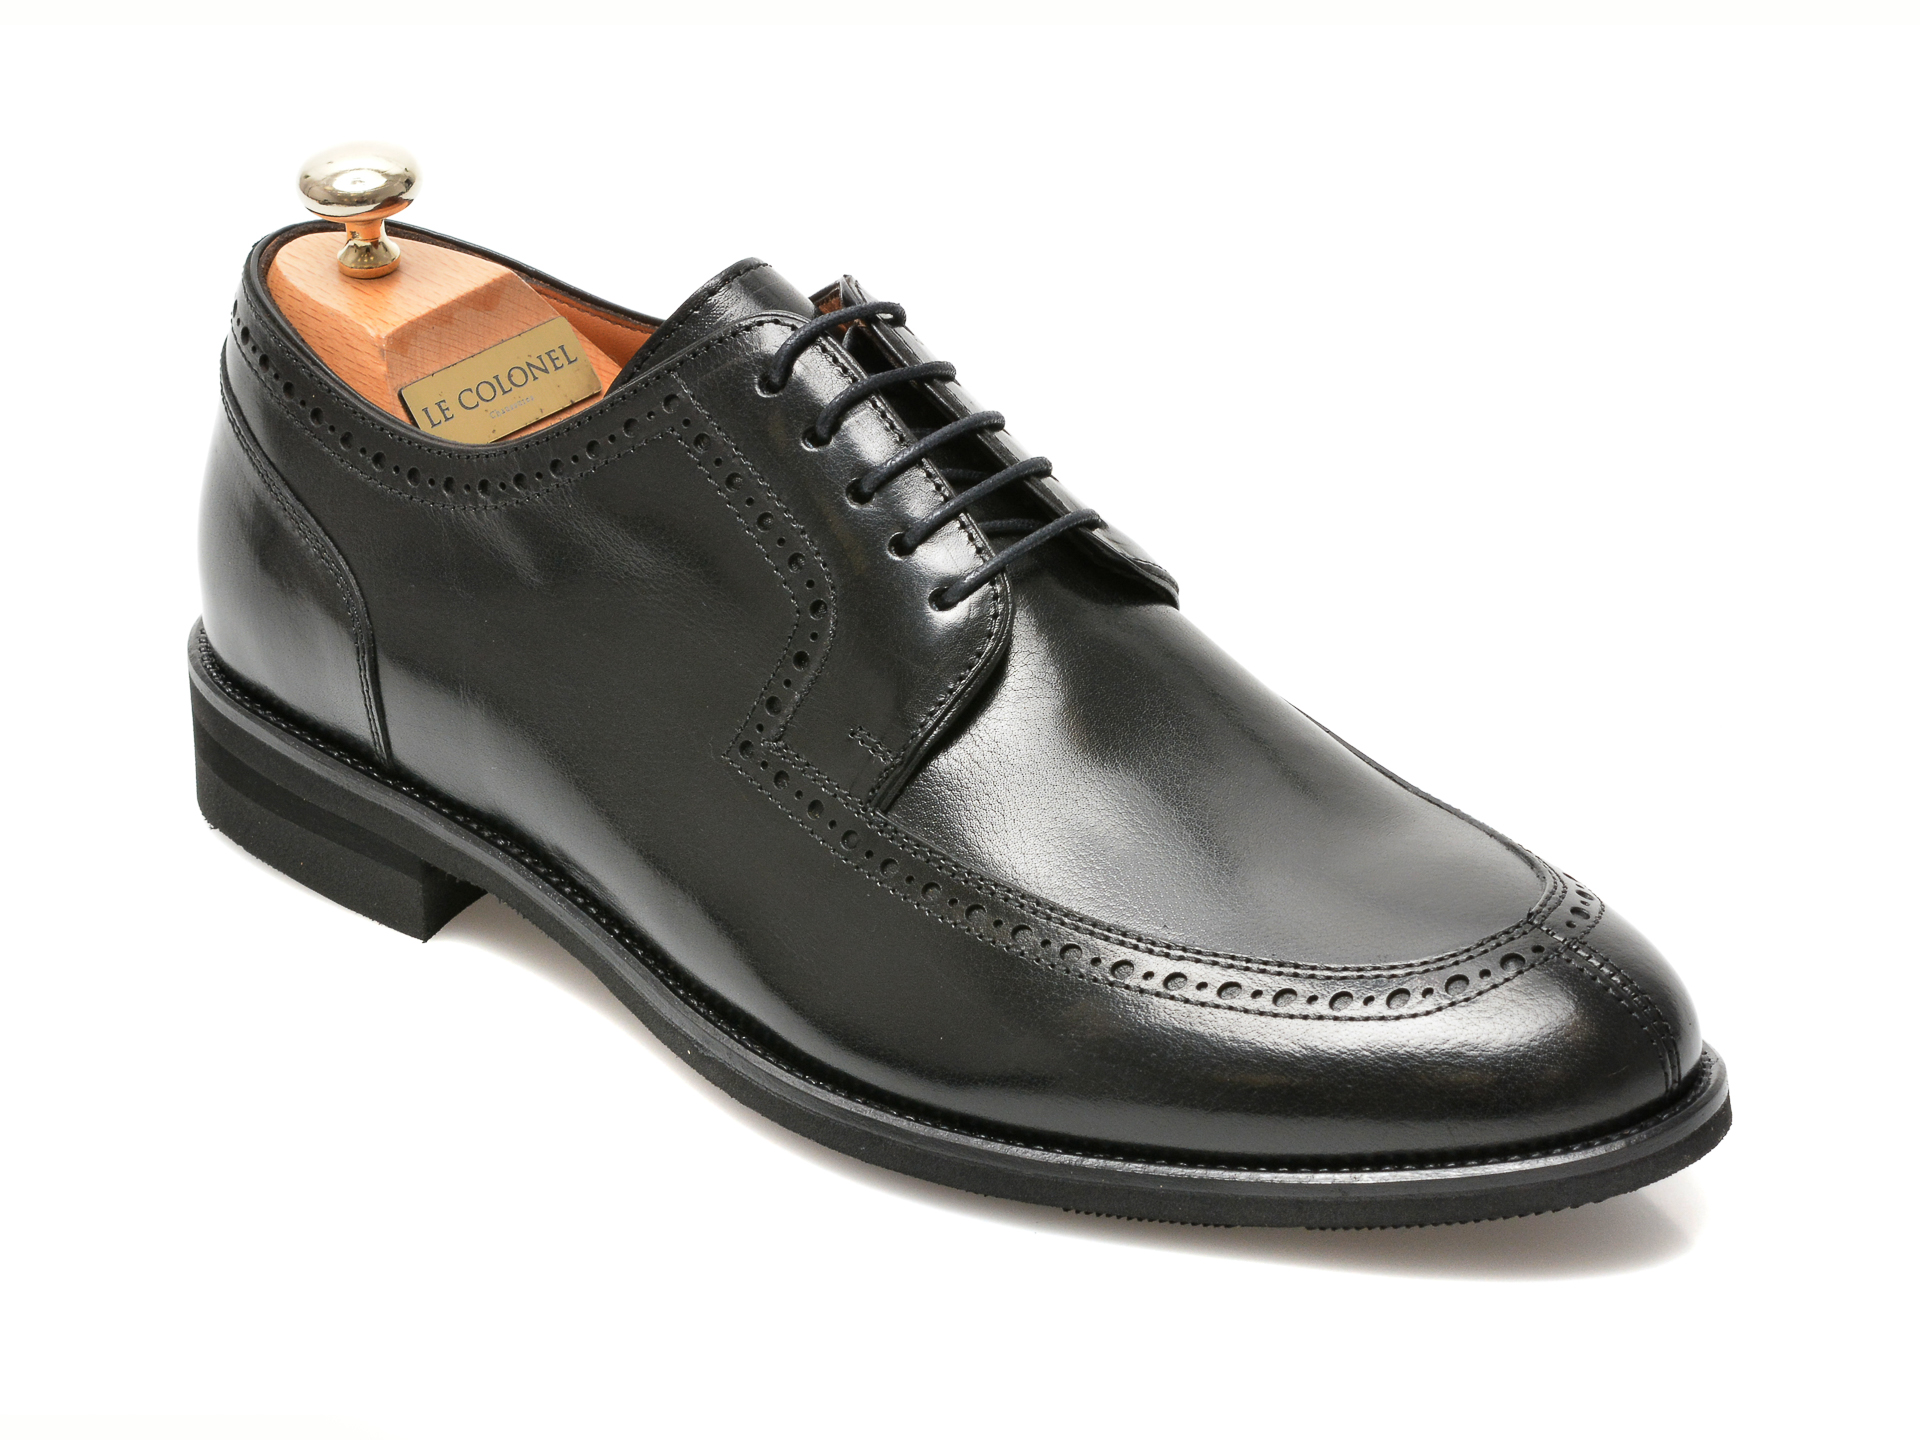 Pantofi LE COLONEL negri, 45279, din piele naturala Le Colonel Le Colonel